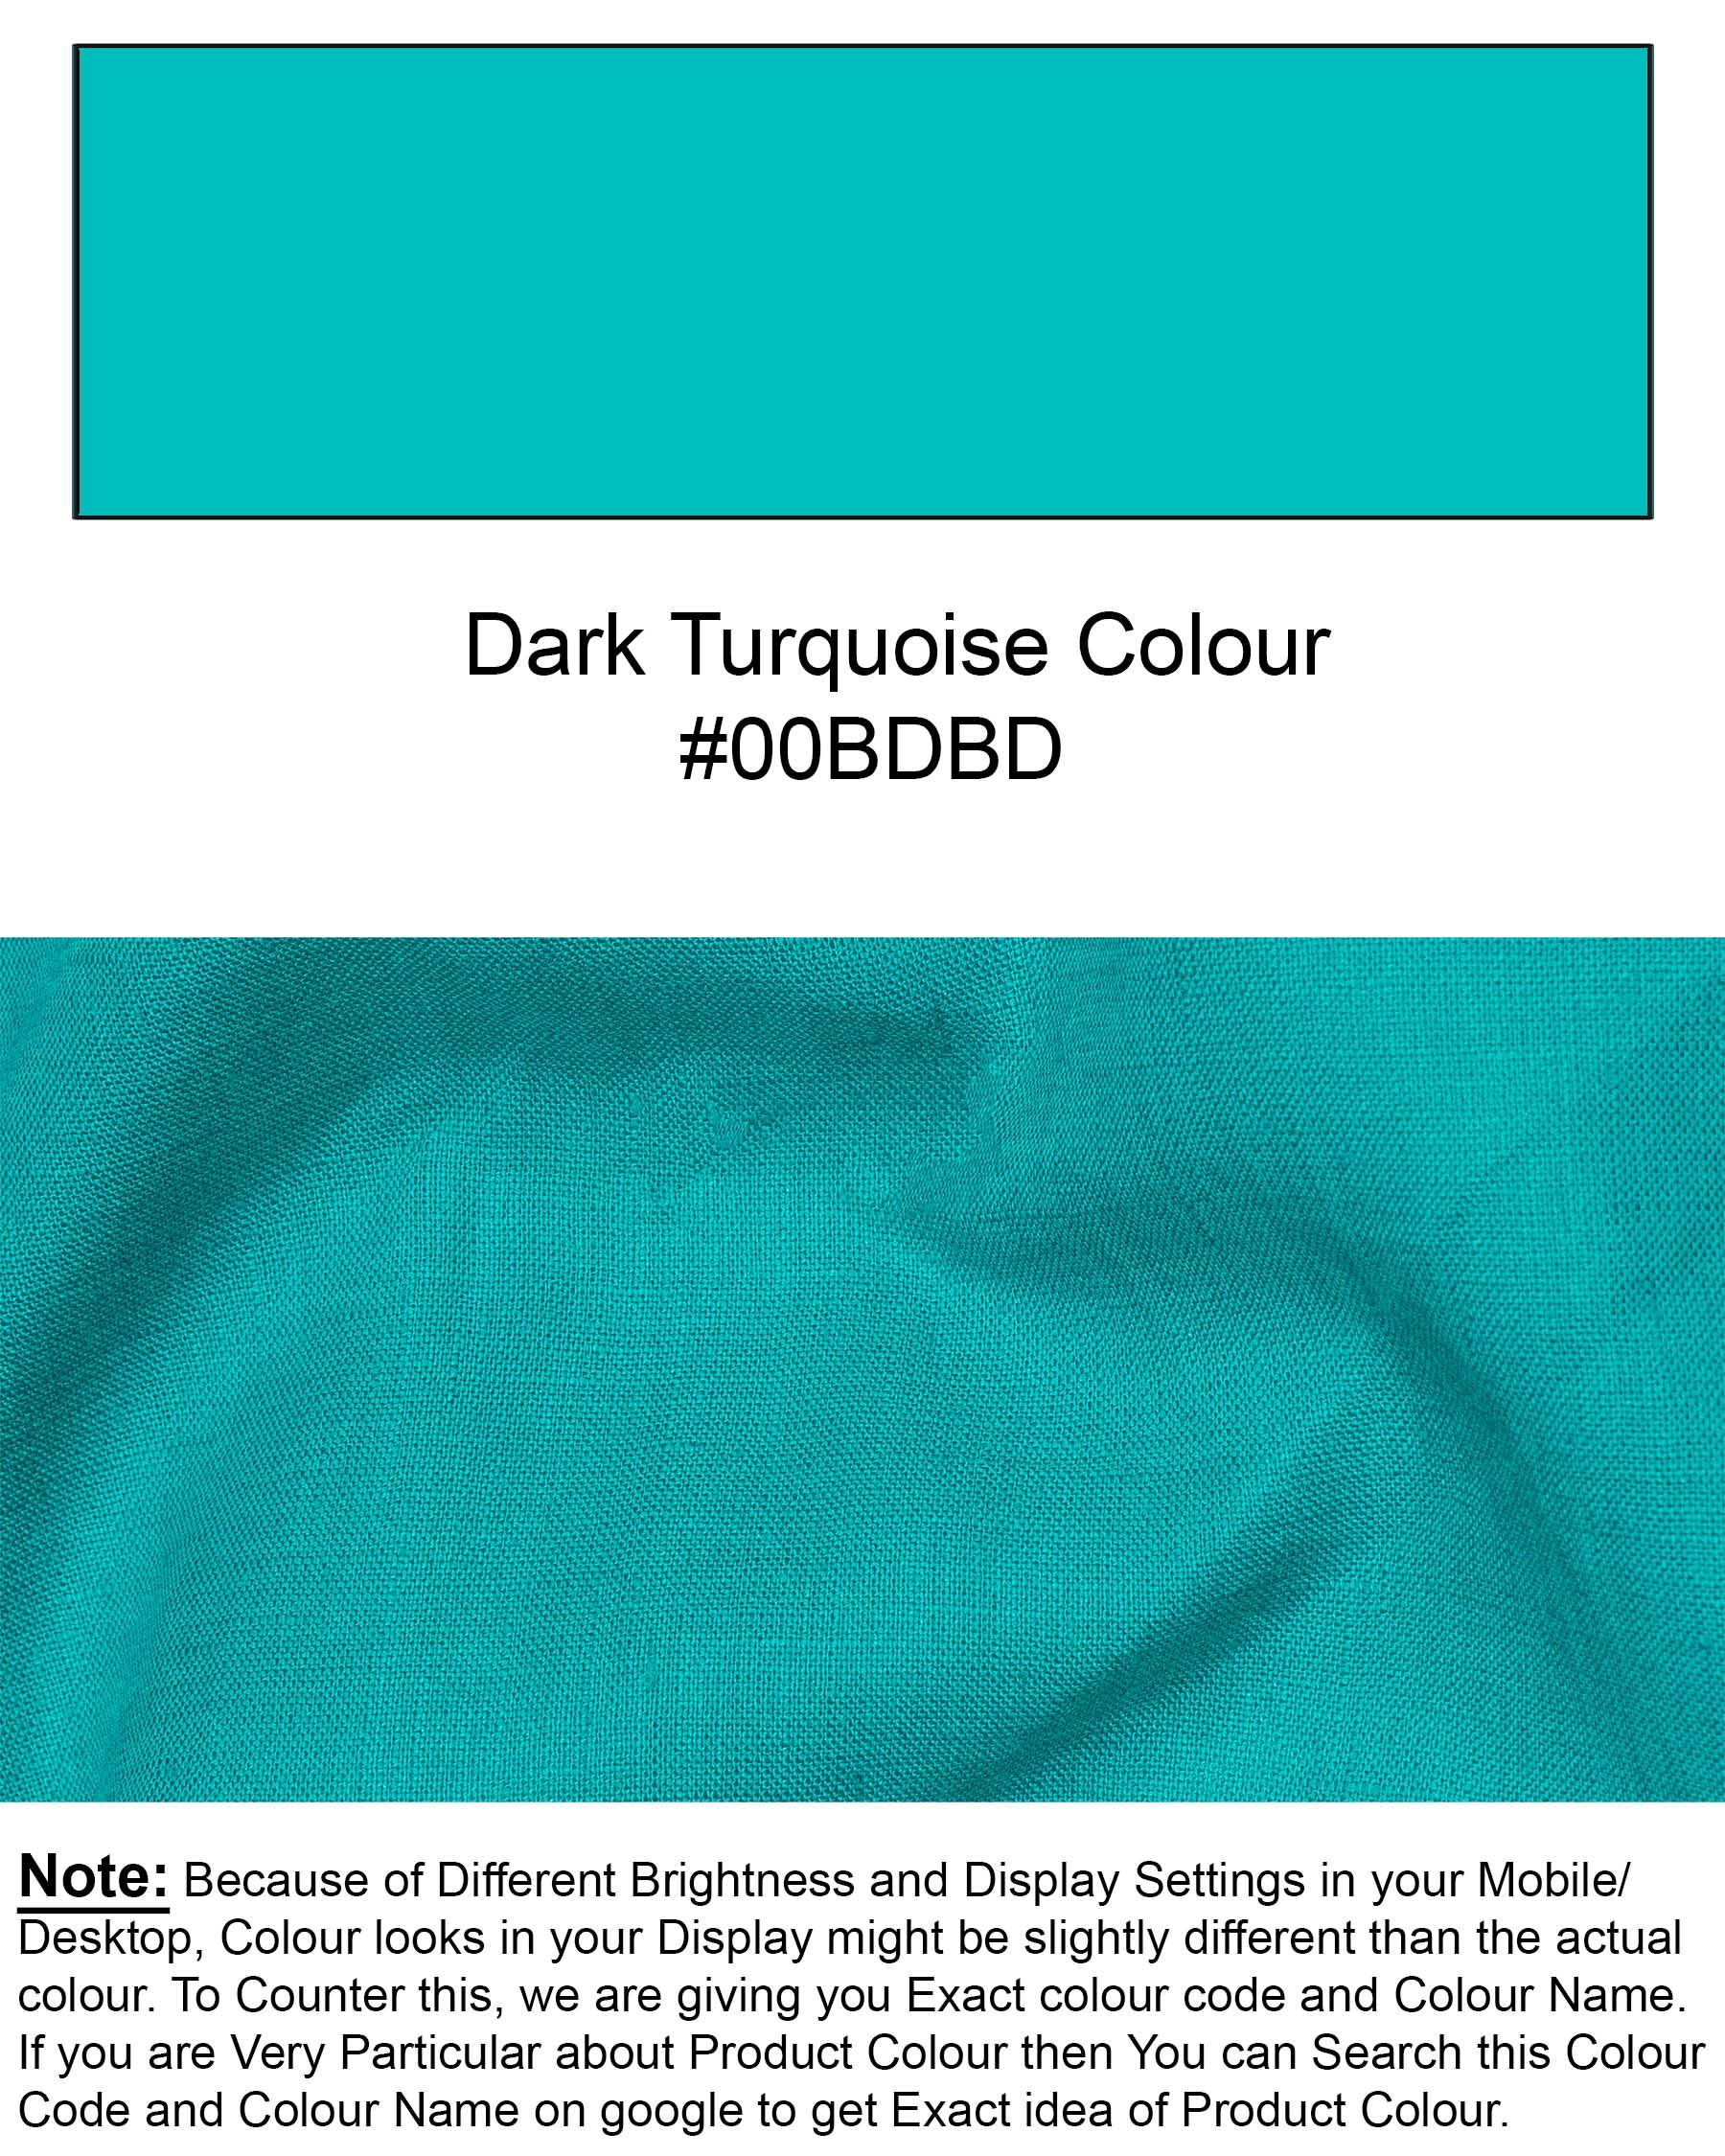 Dark Turquoise Luxurious Linen Shirt 6430-BLK-38, 6430-BLK-H-38, 6430-BLK-39, 6430-BLK-H-39, 6430-BLK-40, 6430-BLK- M-H-40, 6430-BLK-42, 6430-BLK-H-42, 6430-BLK-44, 6430-BLK-H-44, 6430-BLK-46, 6430-BLK-H-46, 6430-BLK-48, 6430-BLK-H-48, 6430-BLK-50, 6430-BLK-H-50, 6430-BLK-52, 6430-BLK-H-52